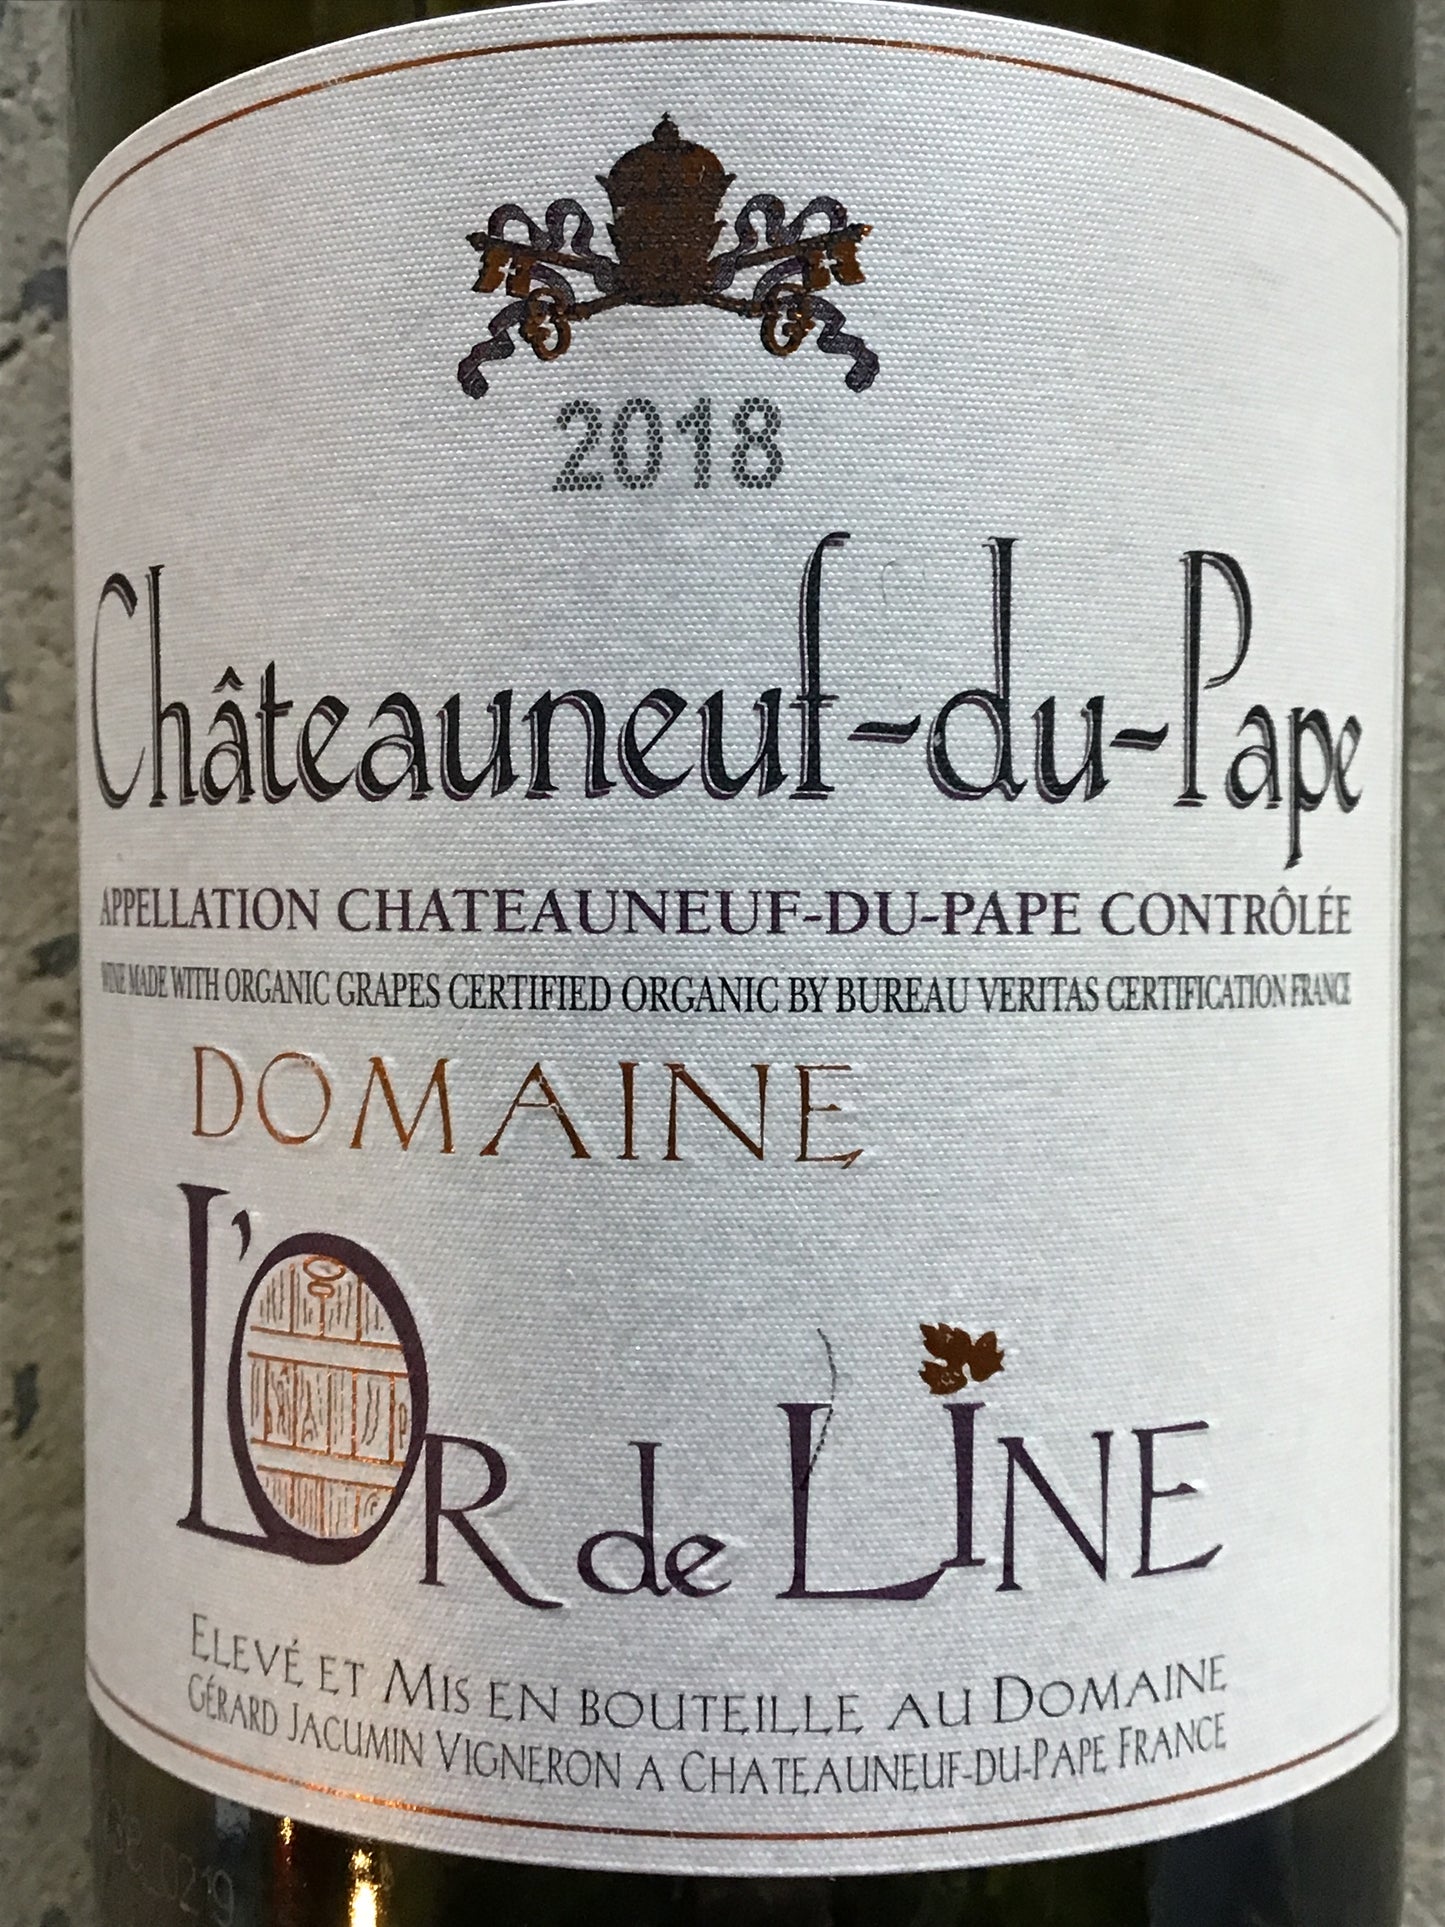 Domaine L'or de Line - Chateauneuf du Pape Blanc